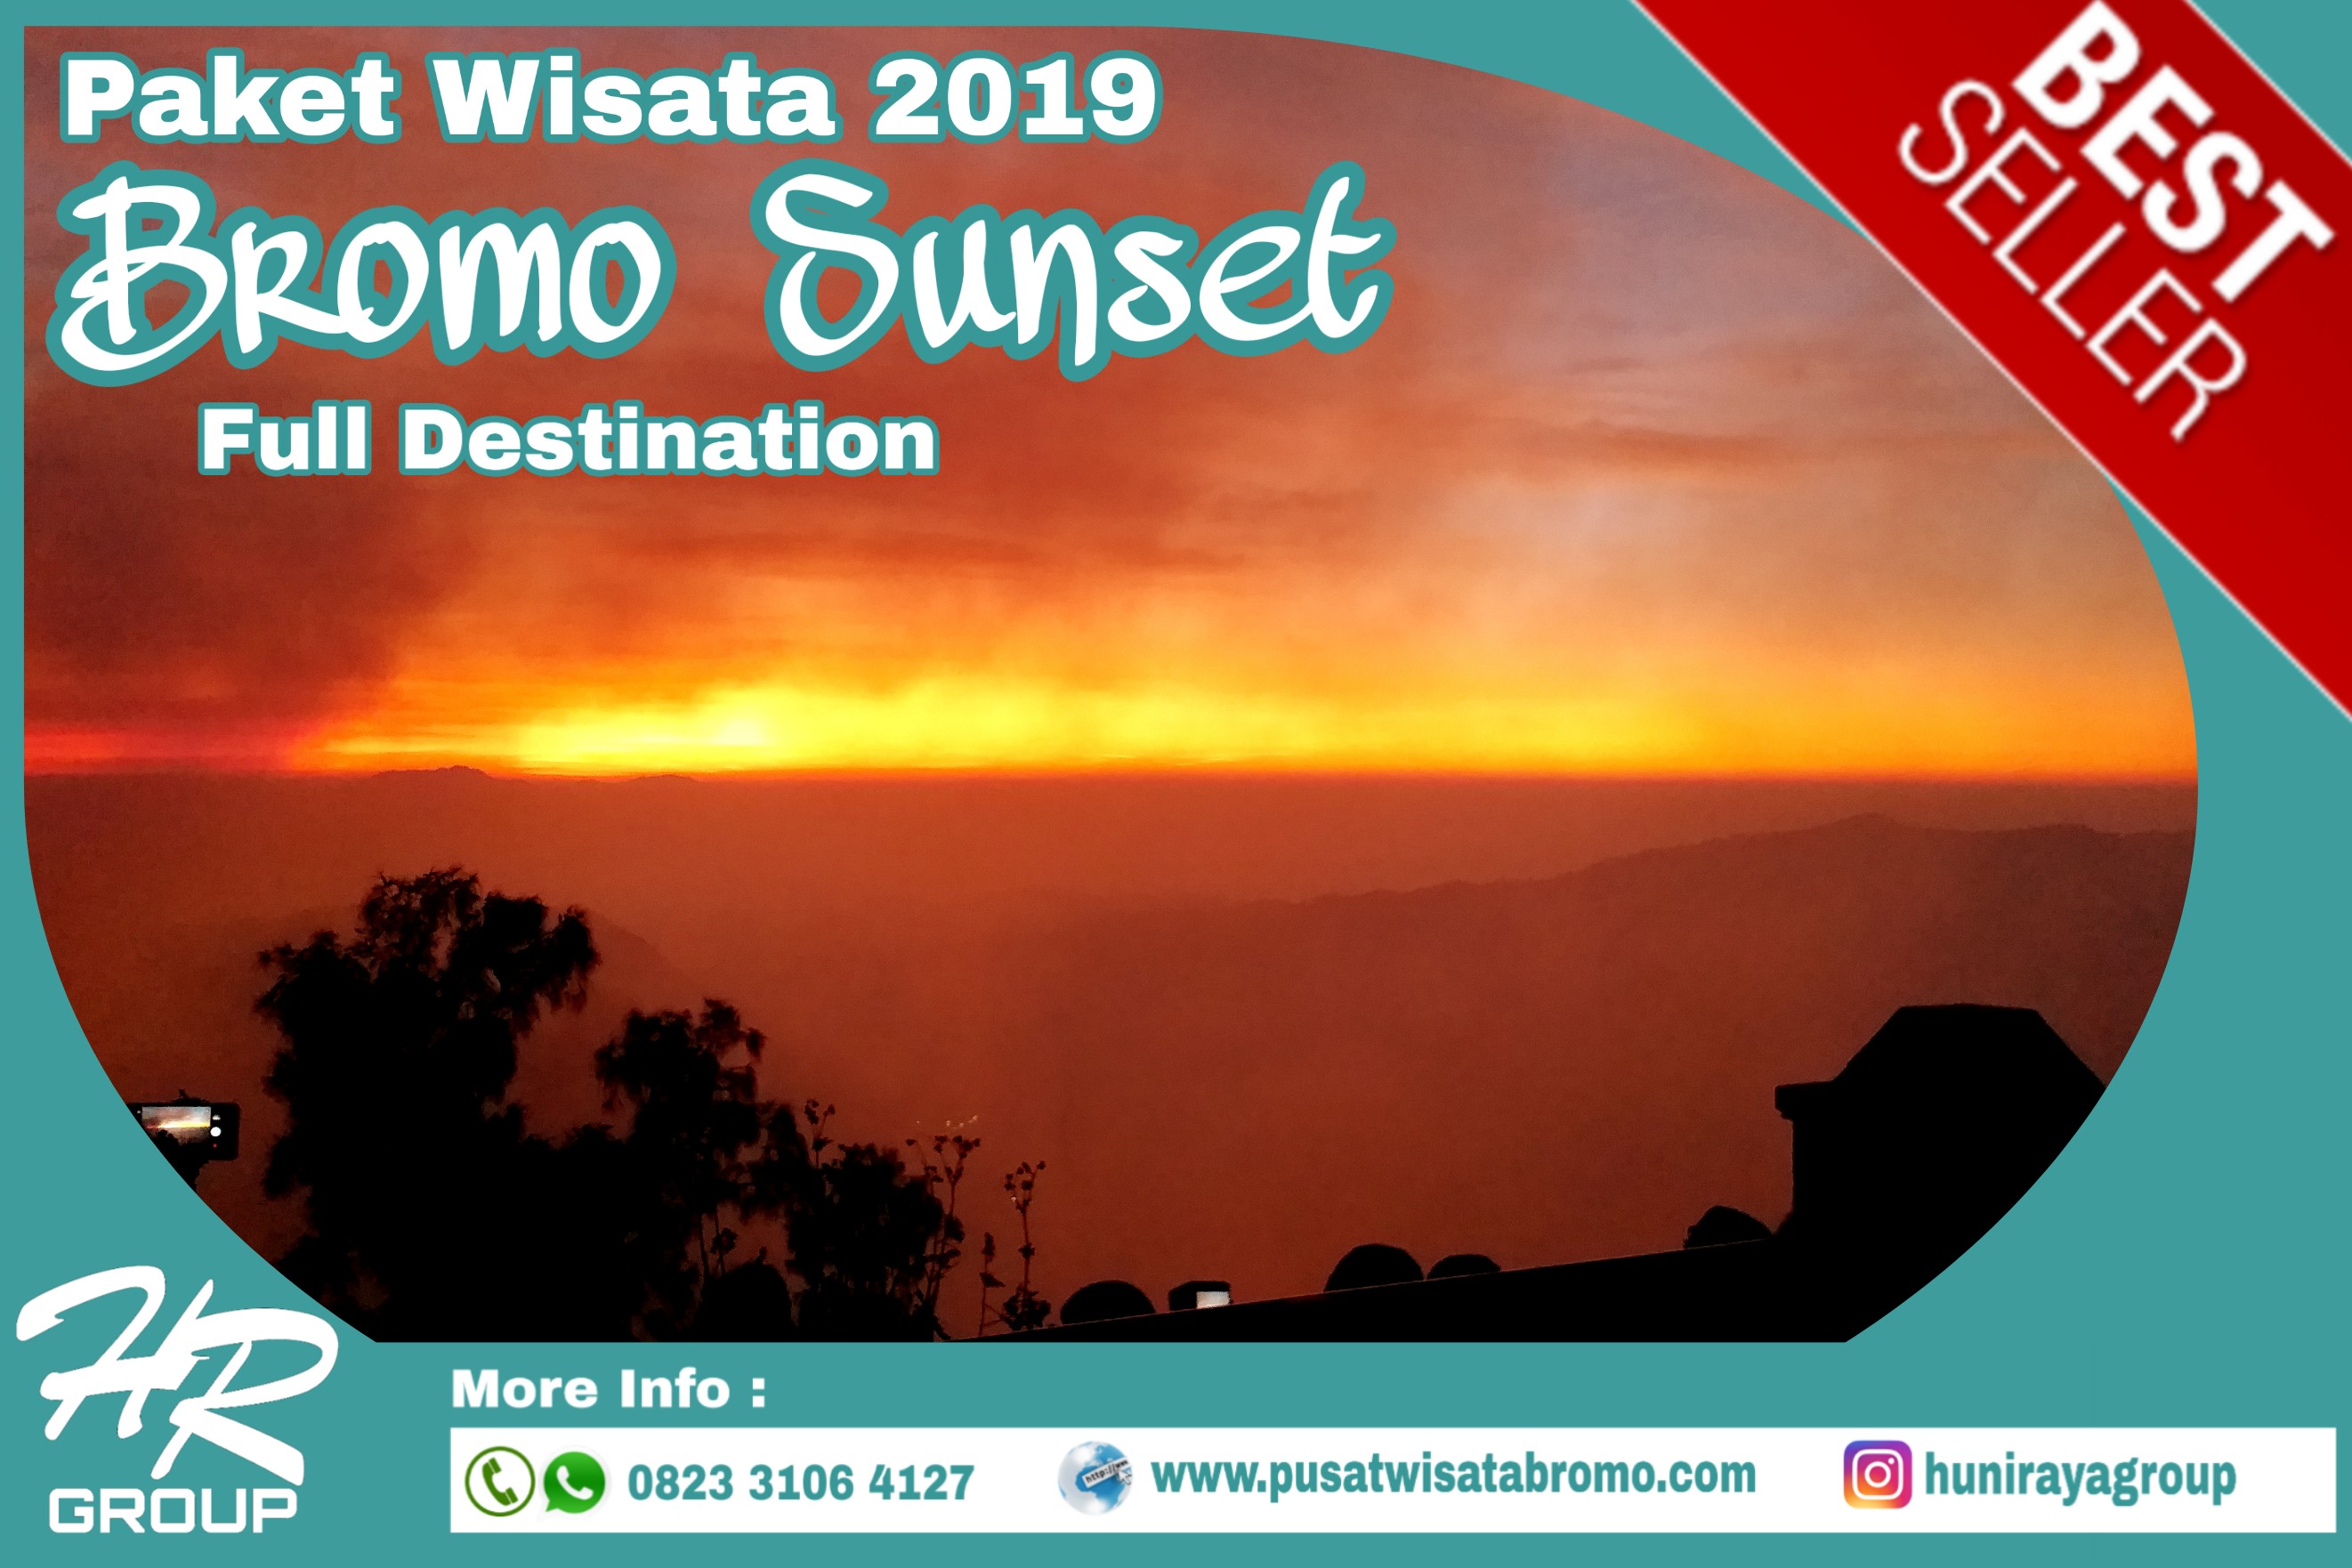 Paket Wisata Bromo Sunset Tour 2019 | PusatWisataBromo.com By Huni Raya Group